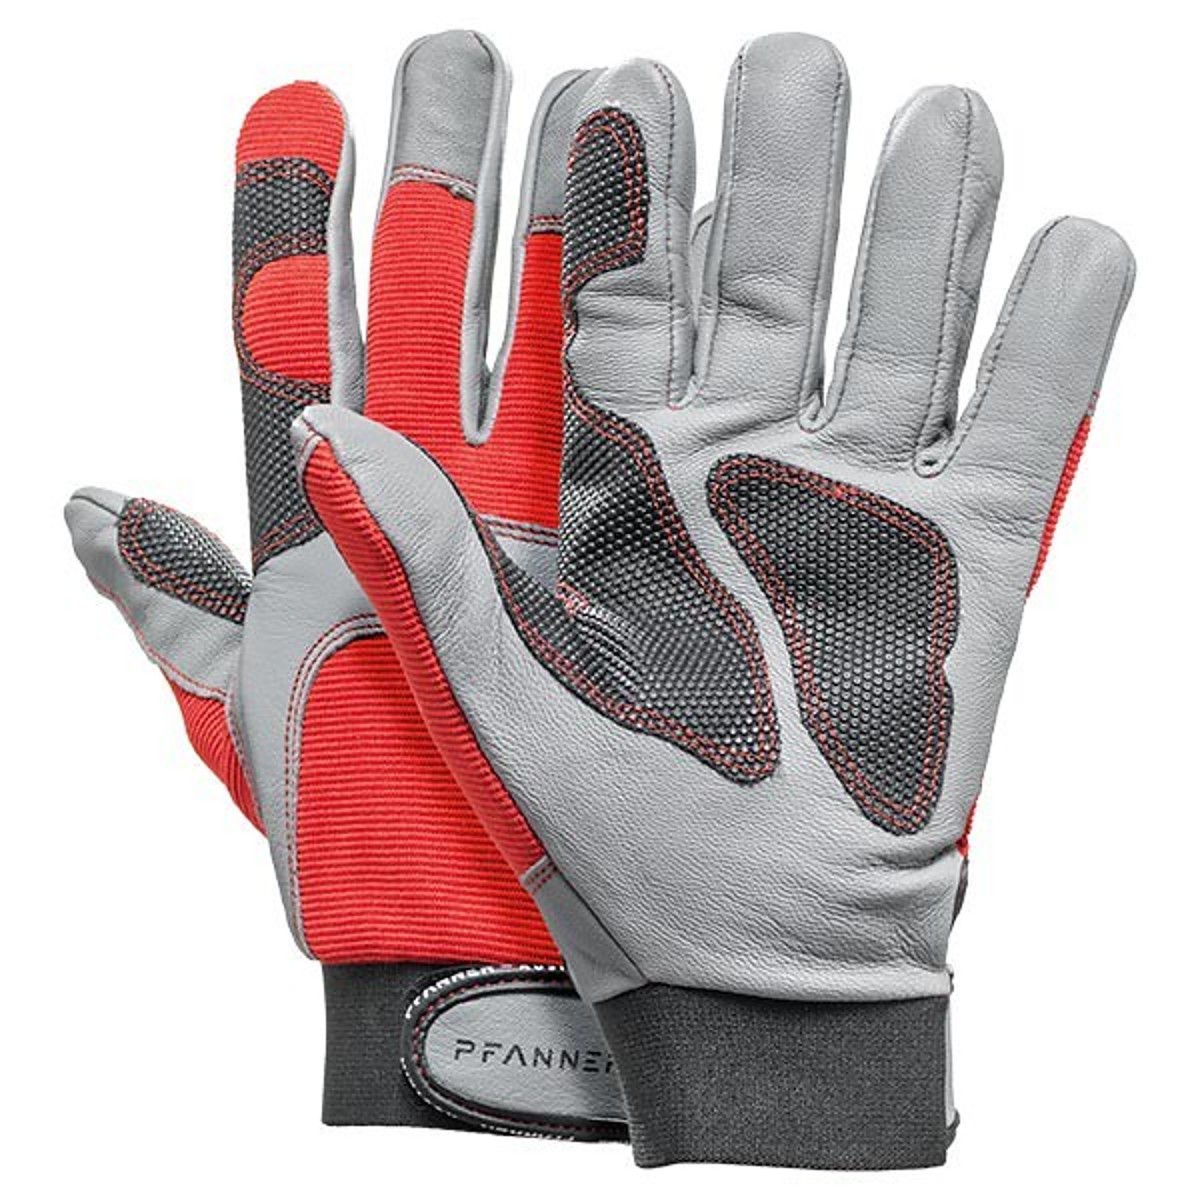 Pfanner StretchFlex® Kepro work gloves